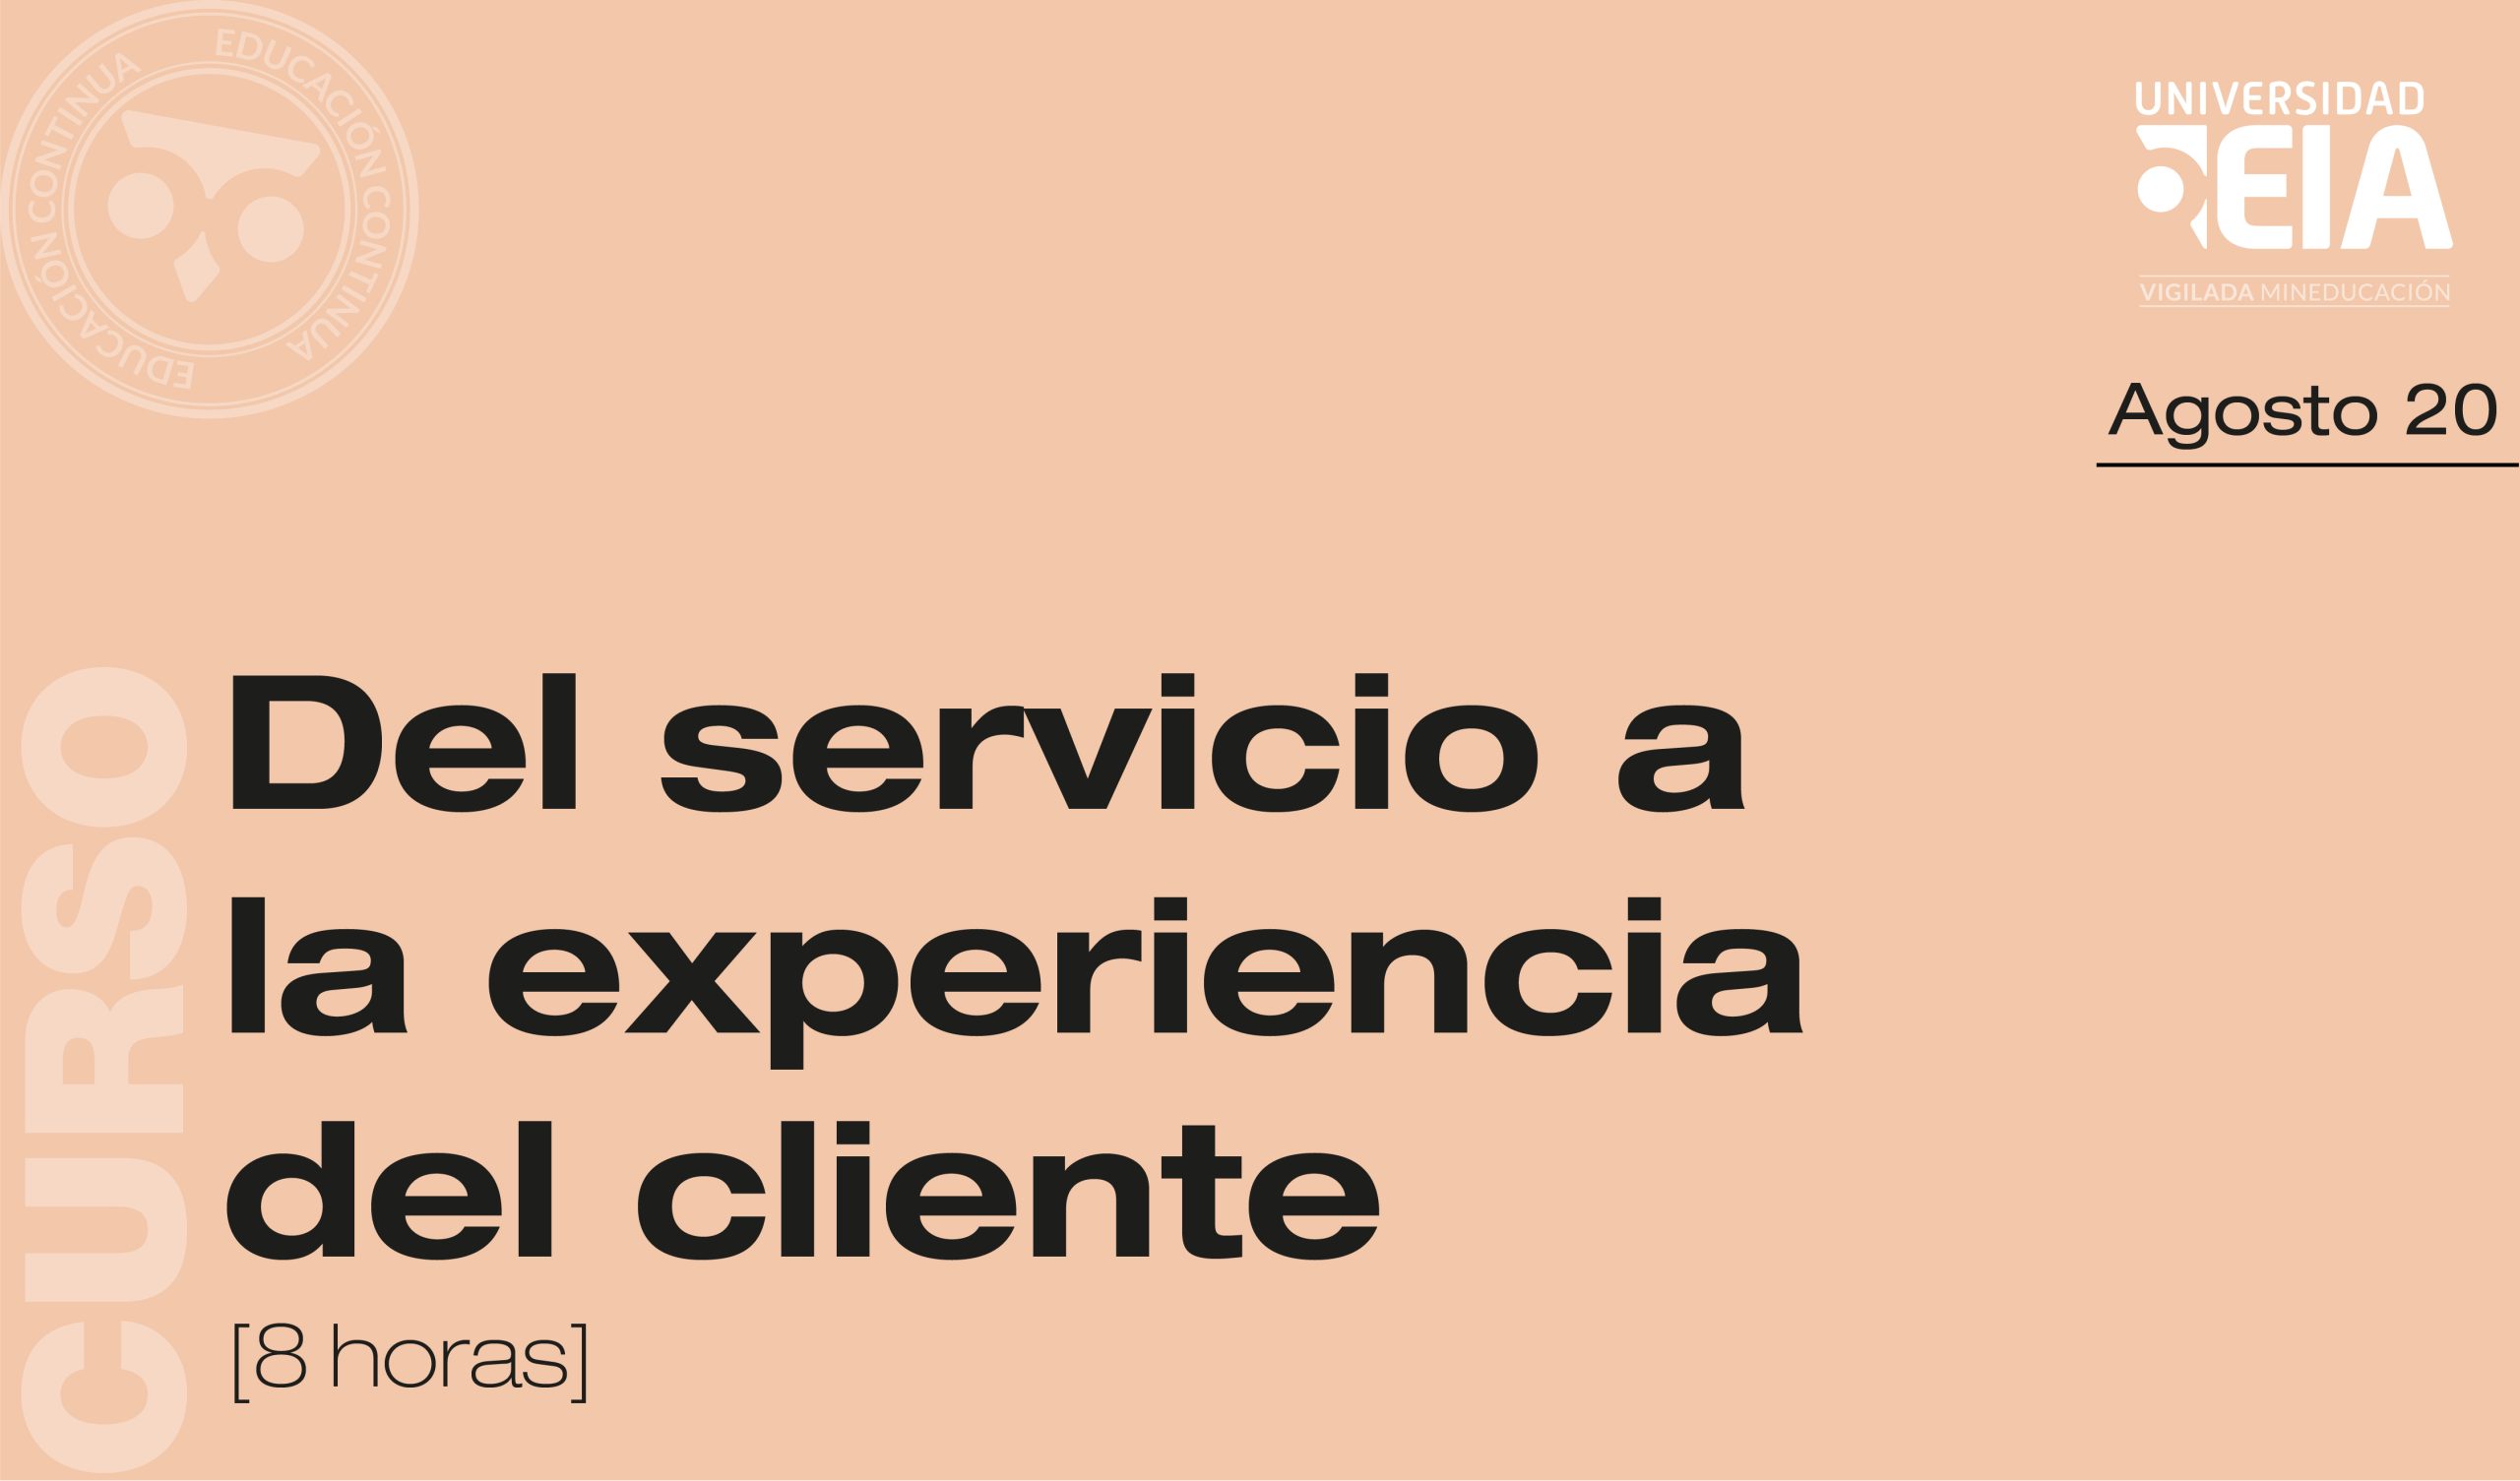 Del servicio a la experiencia del cliente